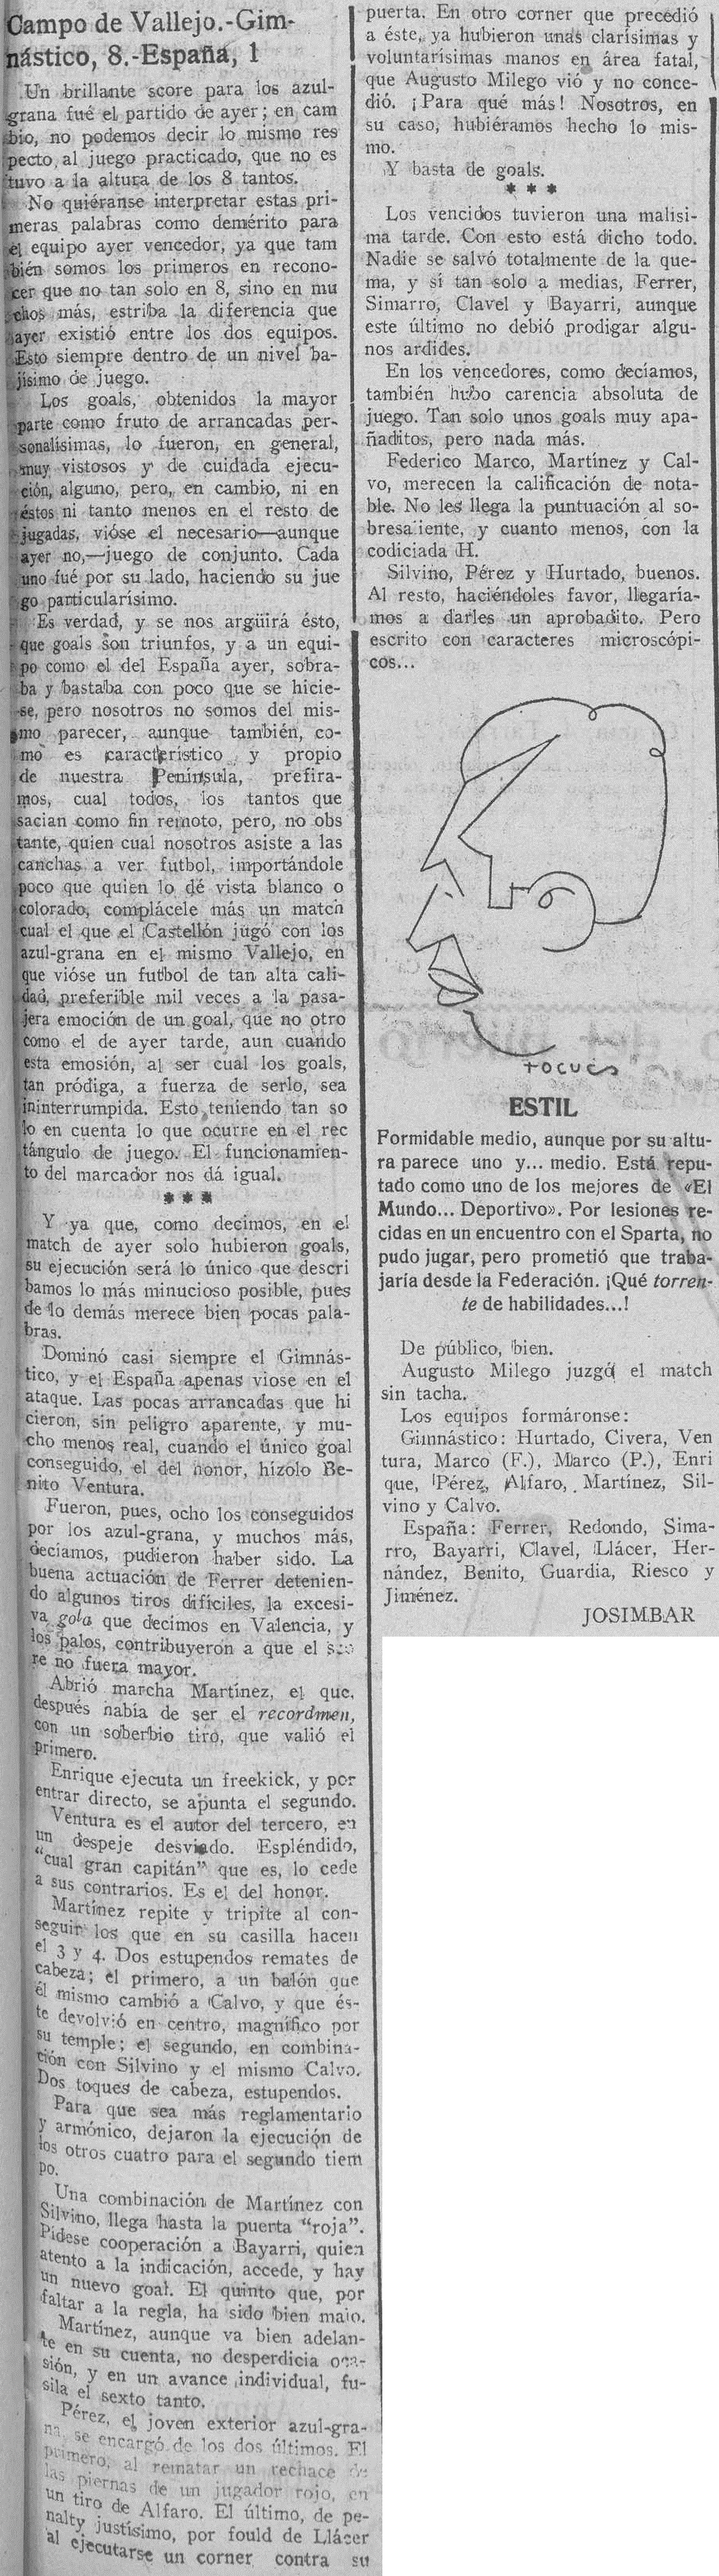 1926.01.10 (10 января 1926), Гимнастико - Эспанья, 8-1.png